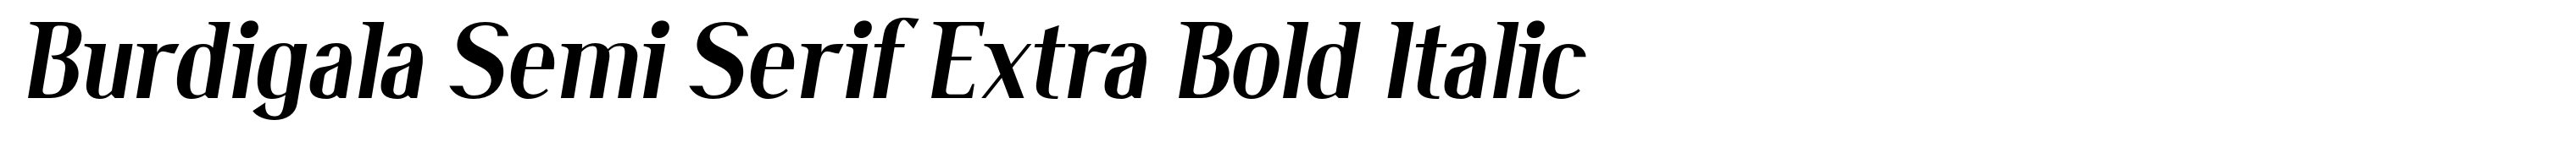 Burdigala Semi Serif Extra Bold Italic